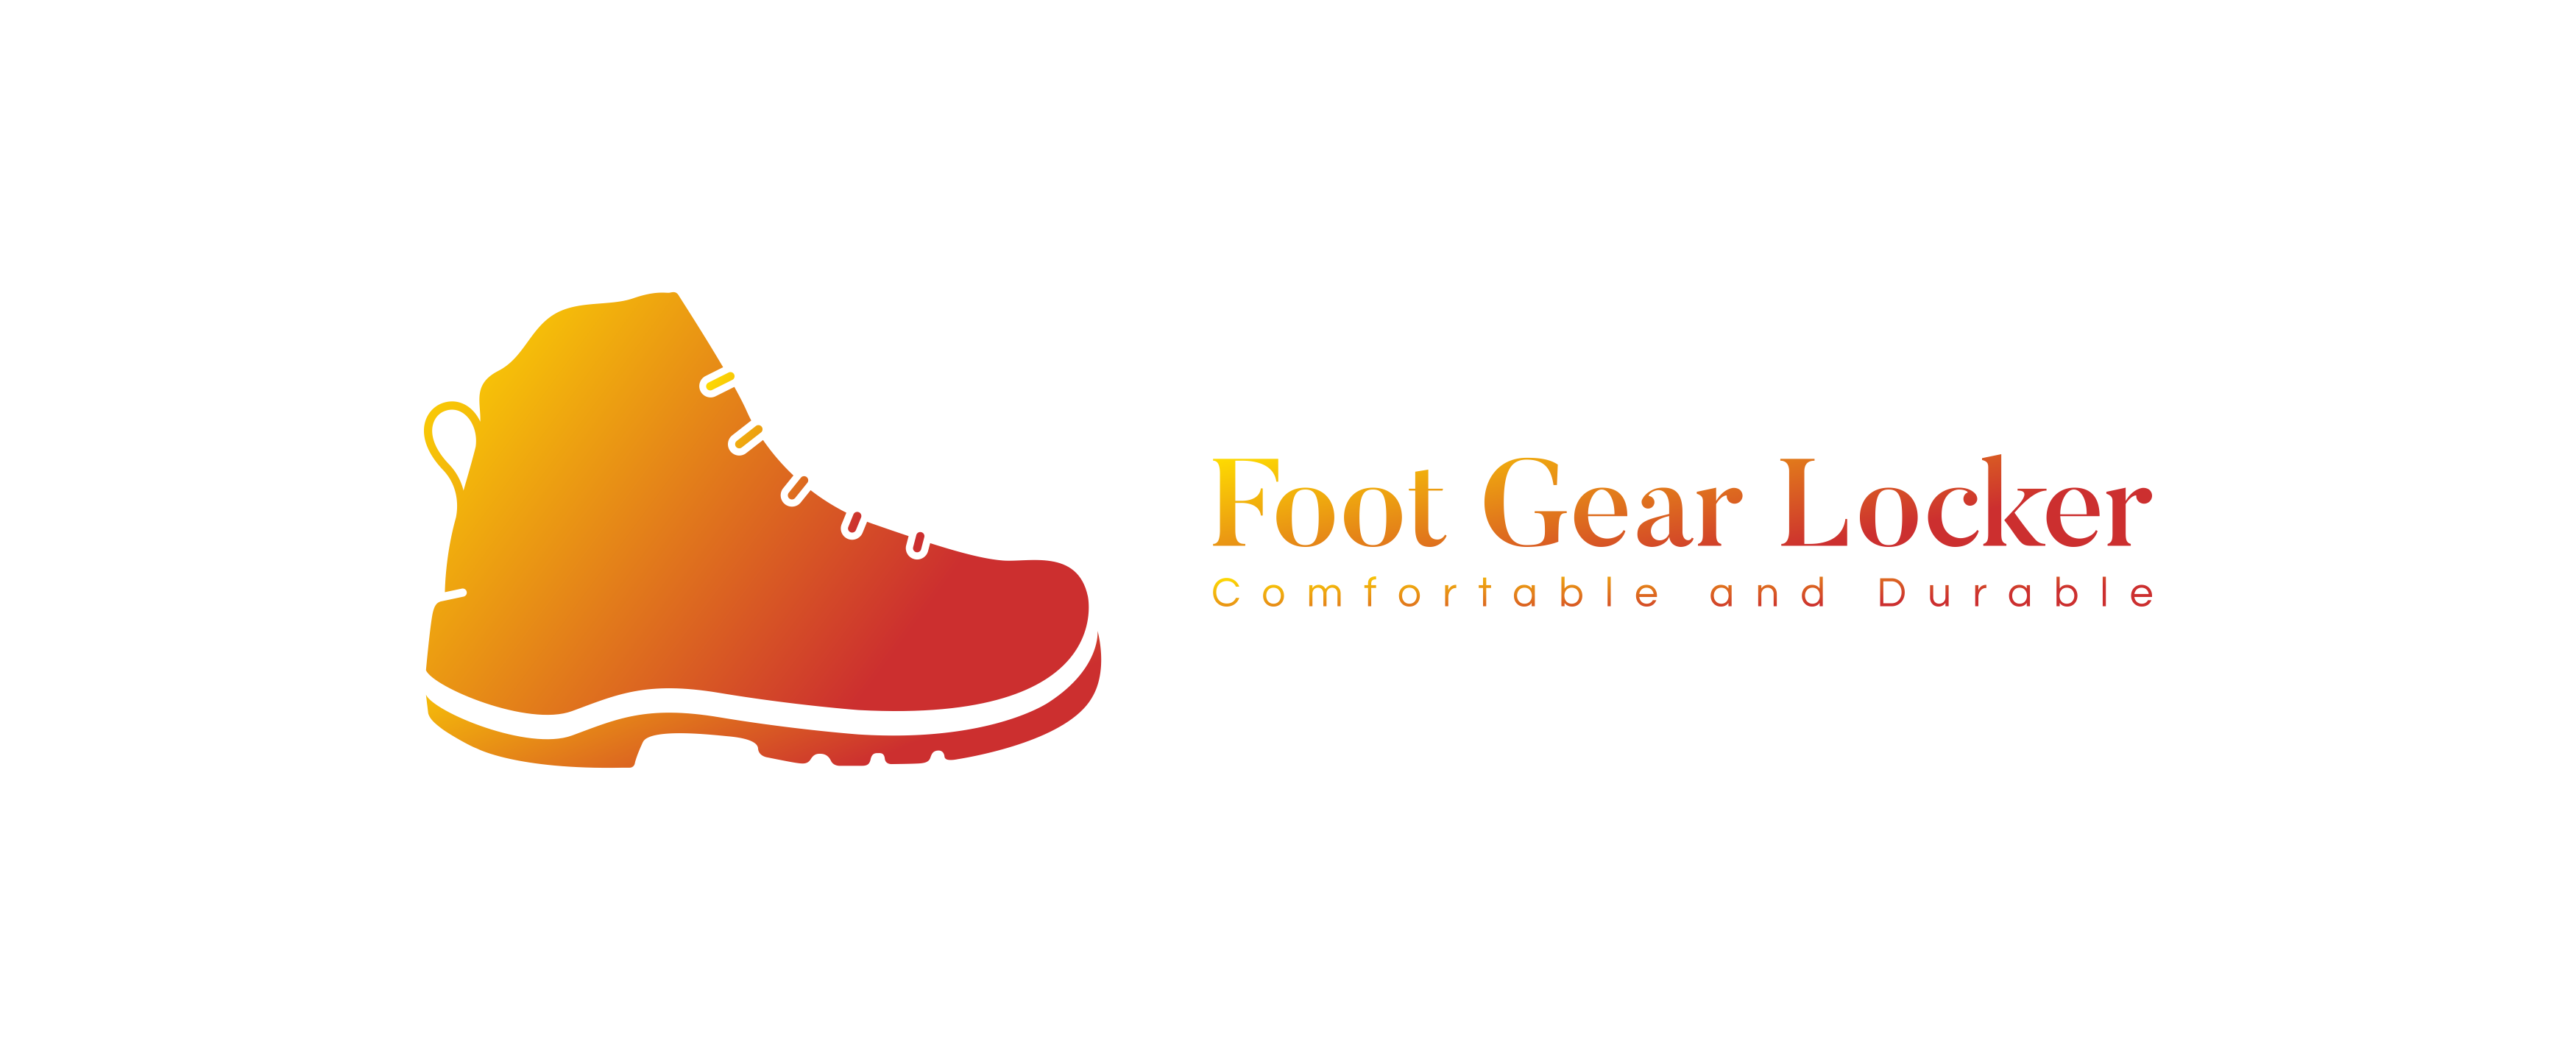 Foot Gear Locker